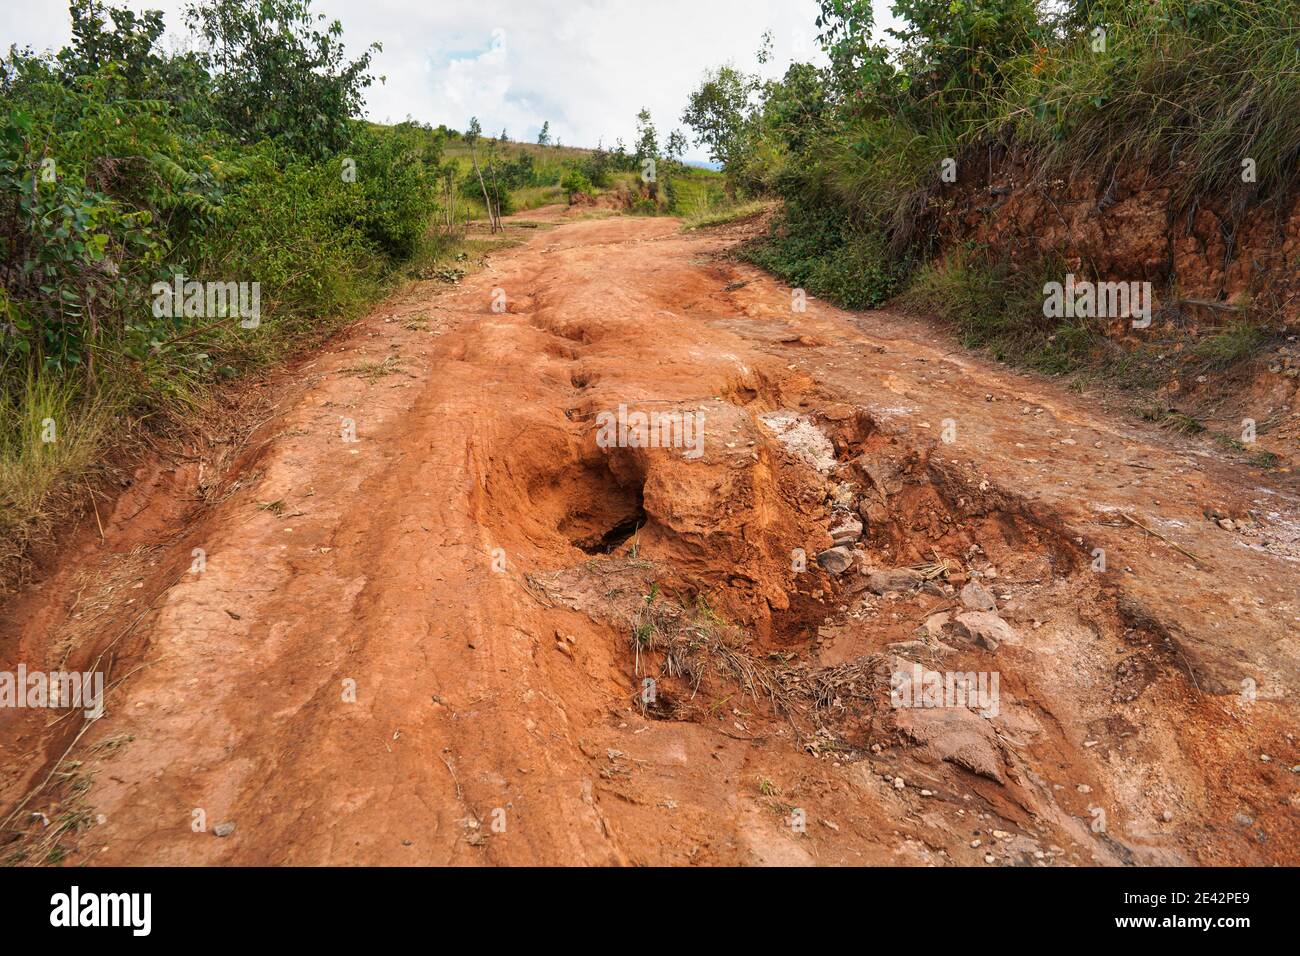 Roter Staub und Schlamm Straße in schlechtem Zustand mit großen Löchern und Beulen nach Regen gebildet. Die Routen zum Nationalpark Andringitra sind bei Nässe extrem schlecht Stockfoto